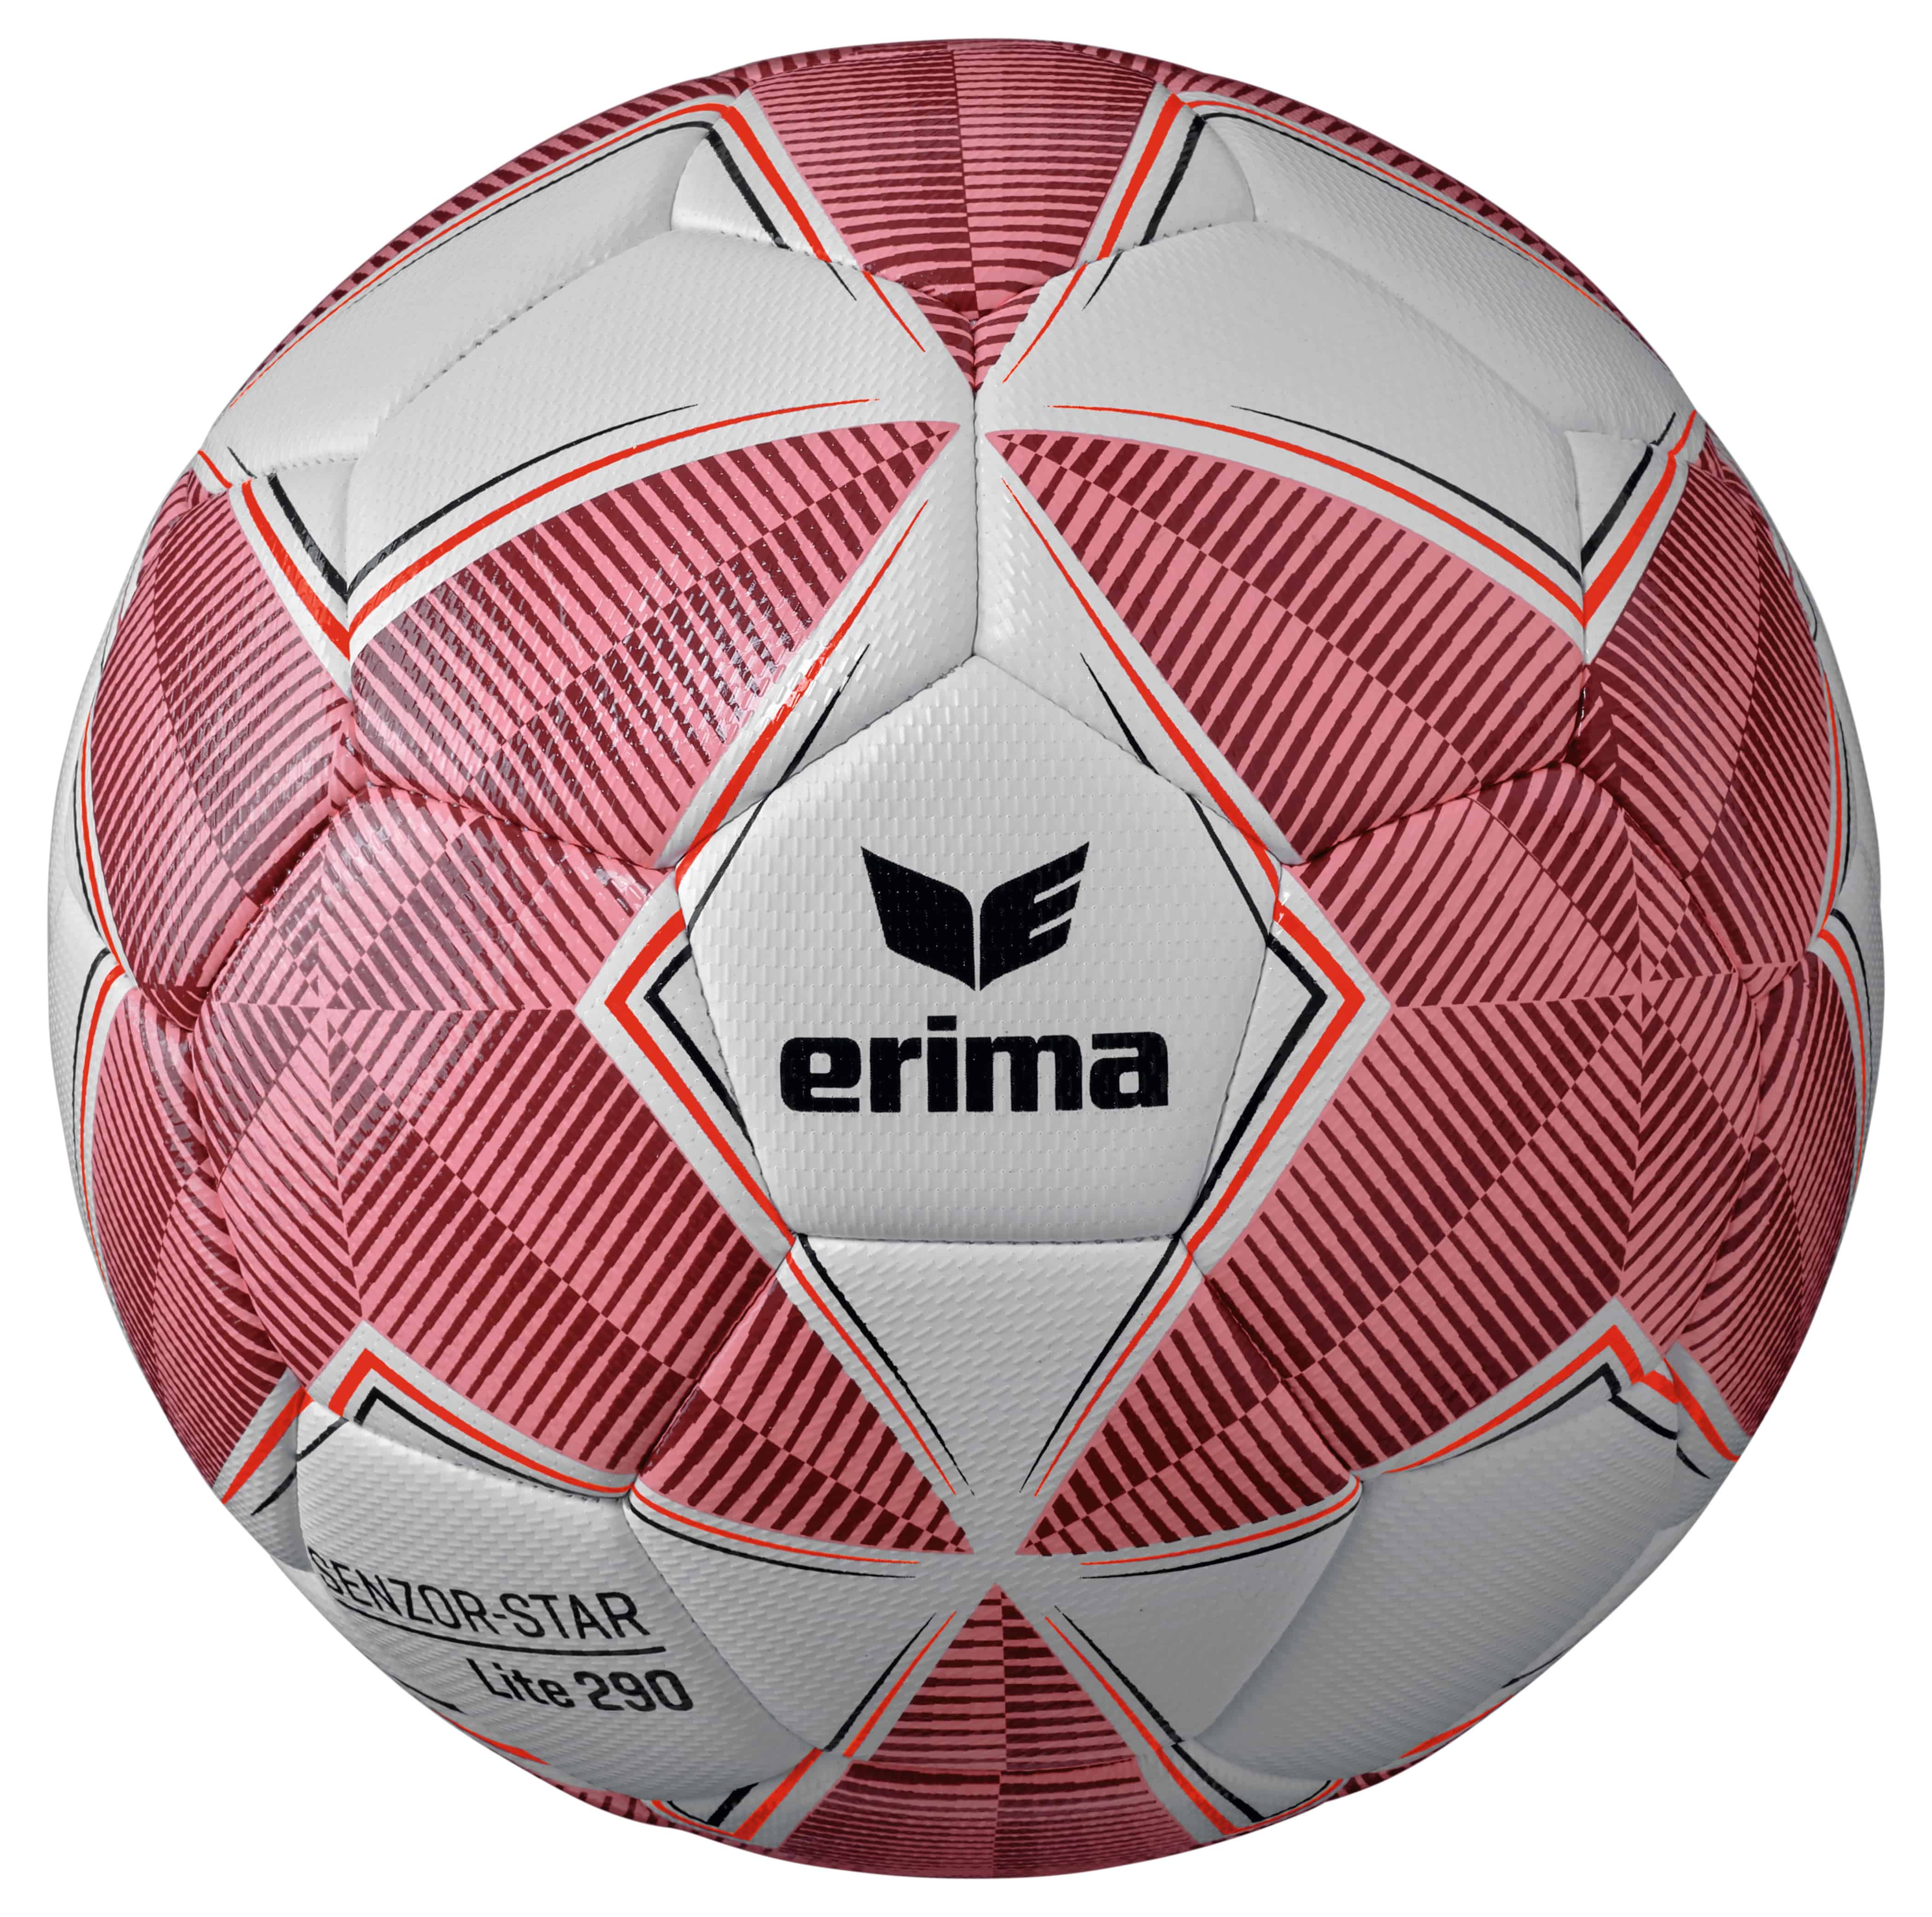 Erima Fußball Senzor-Star Lite 290 Gr.4 rot-bordeaux